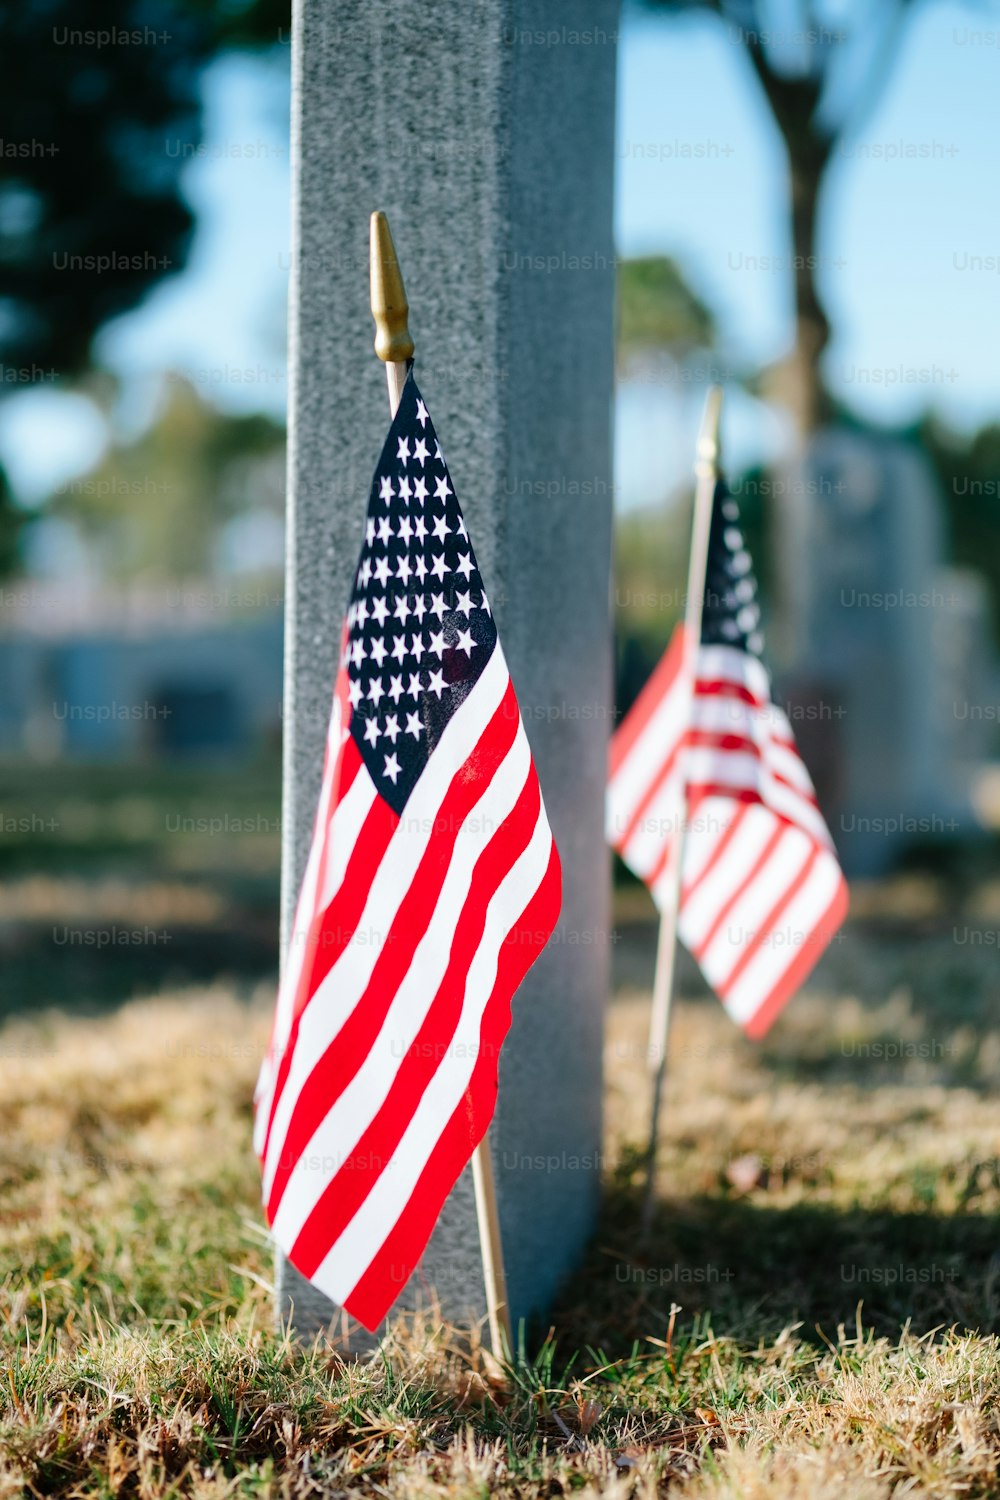 Deux drapeaux américains sont placés à côté d’une tombe